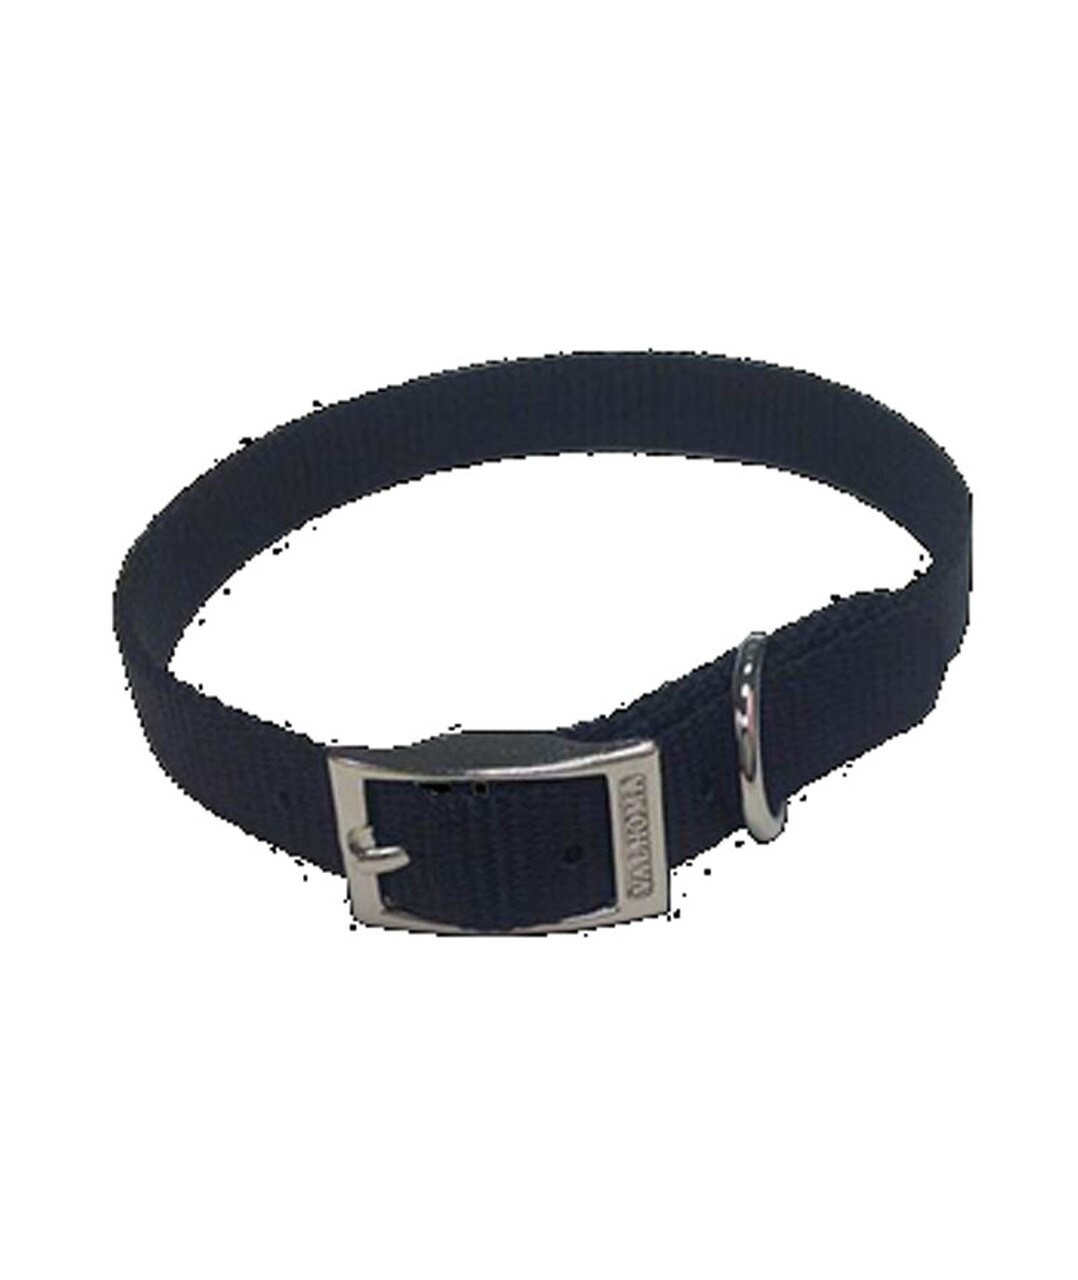 Medium Black Dog Collar